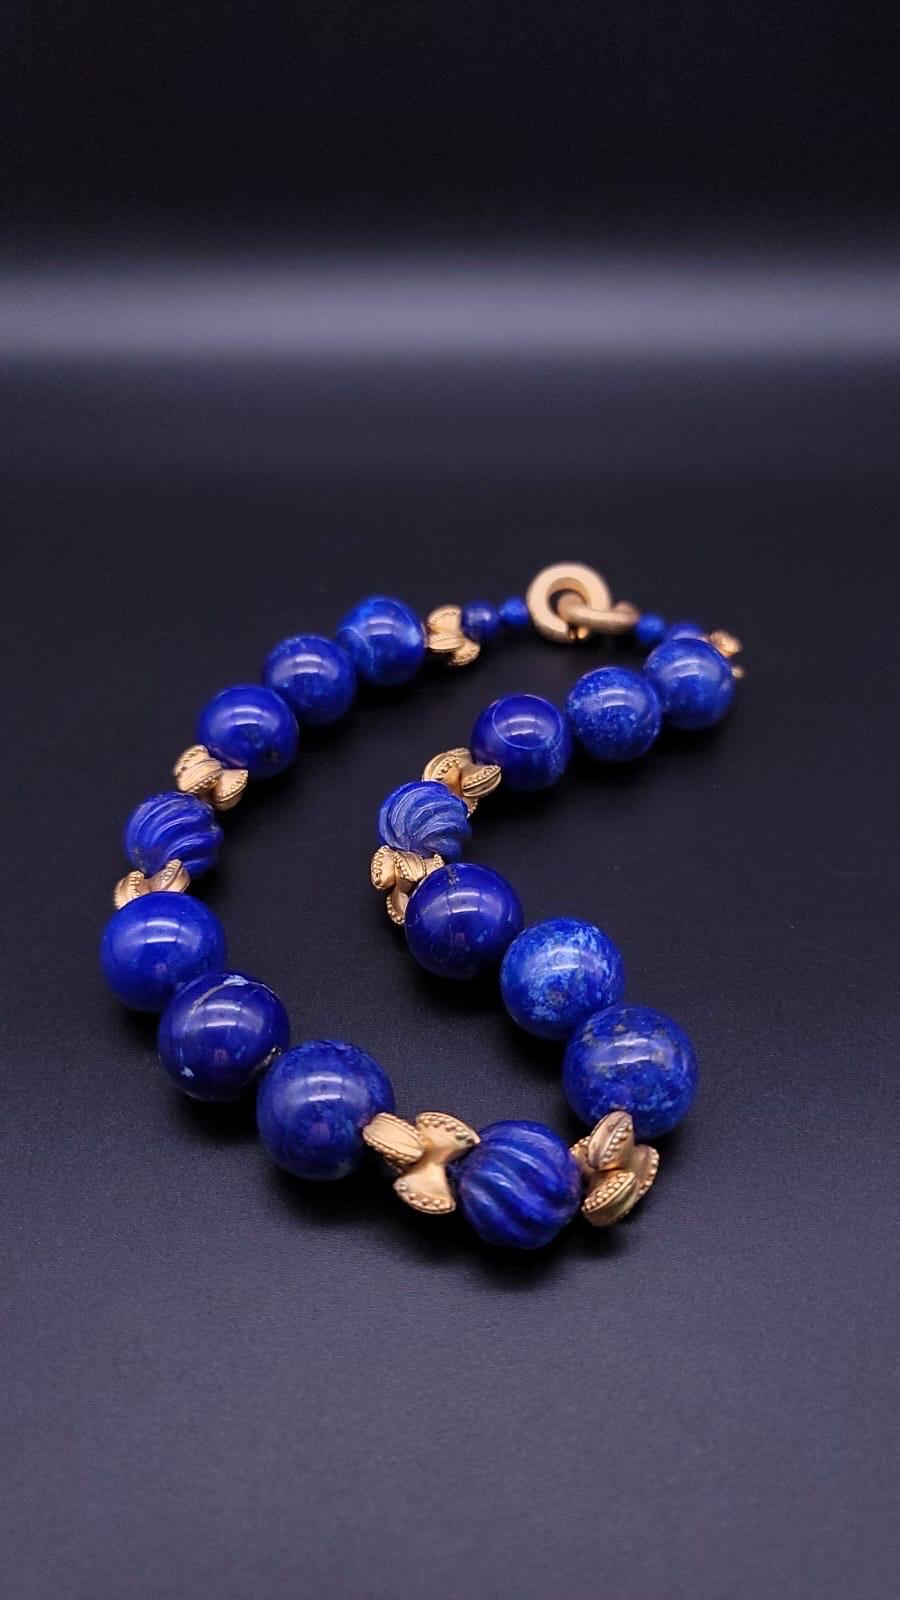 A.Jeschel Large Lapis Lazuli with vermeil knots necklace. 13